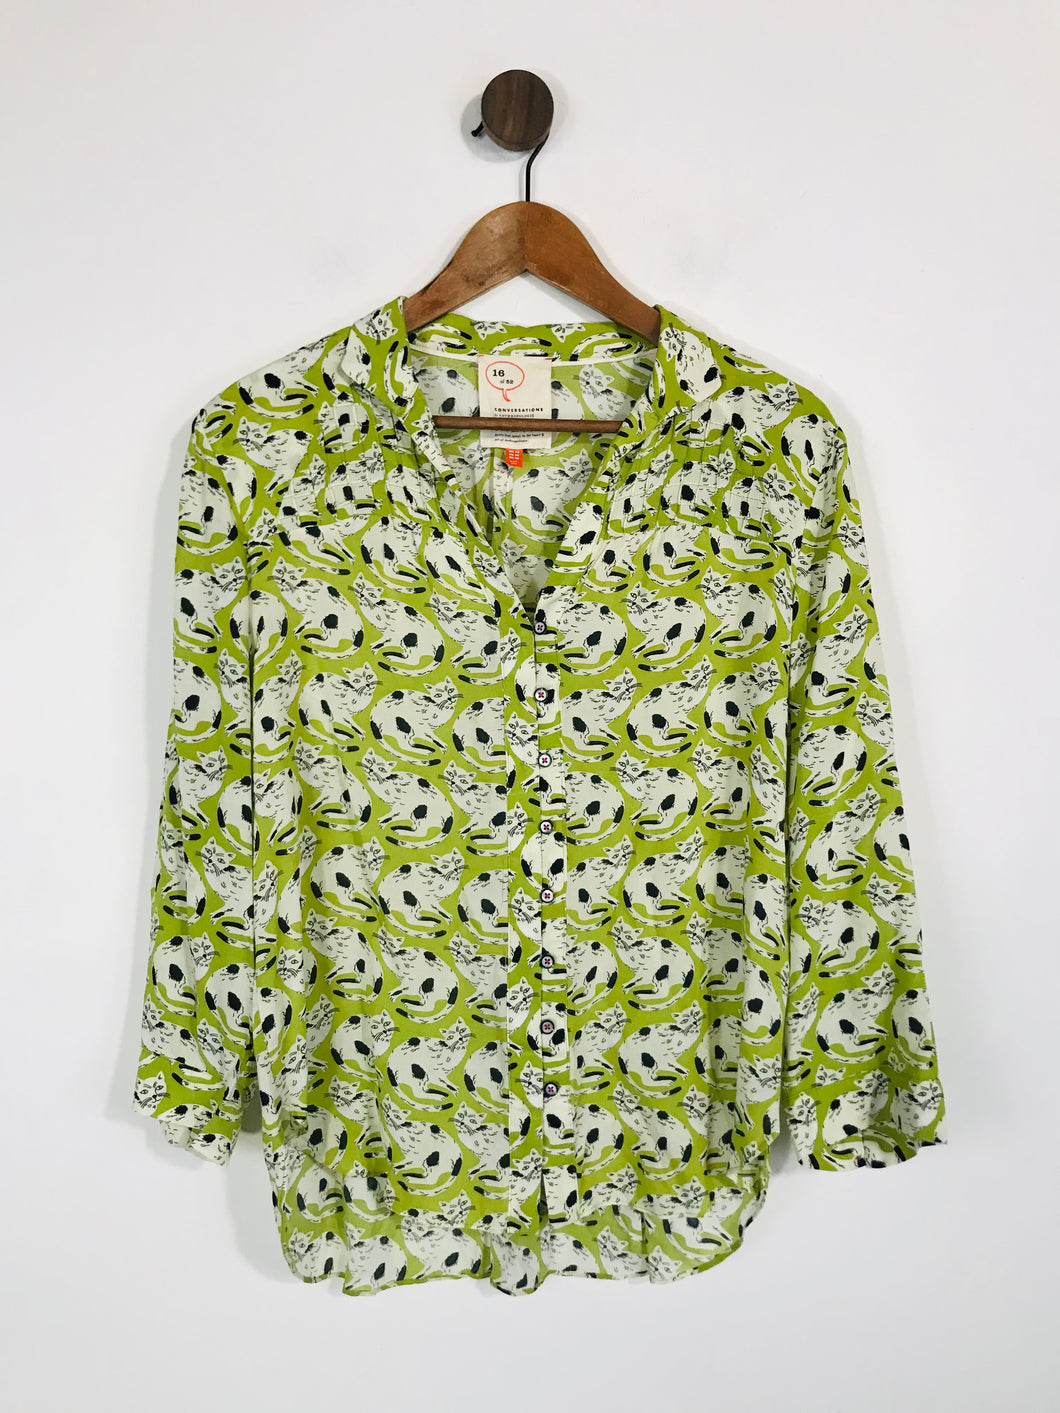 Anthropologie Women's Cats Button-Up Shirt | UK12 | Green